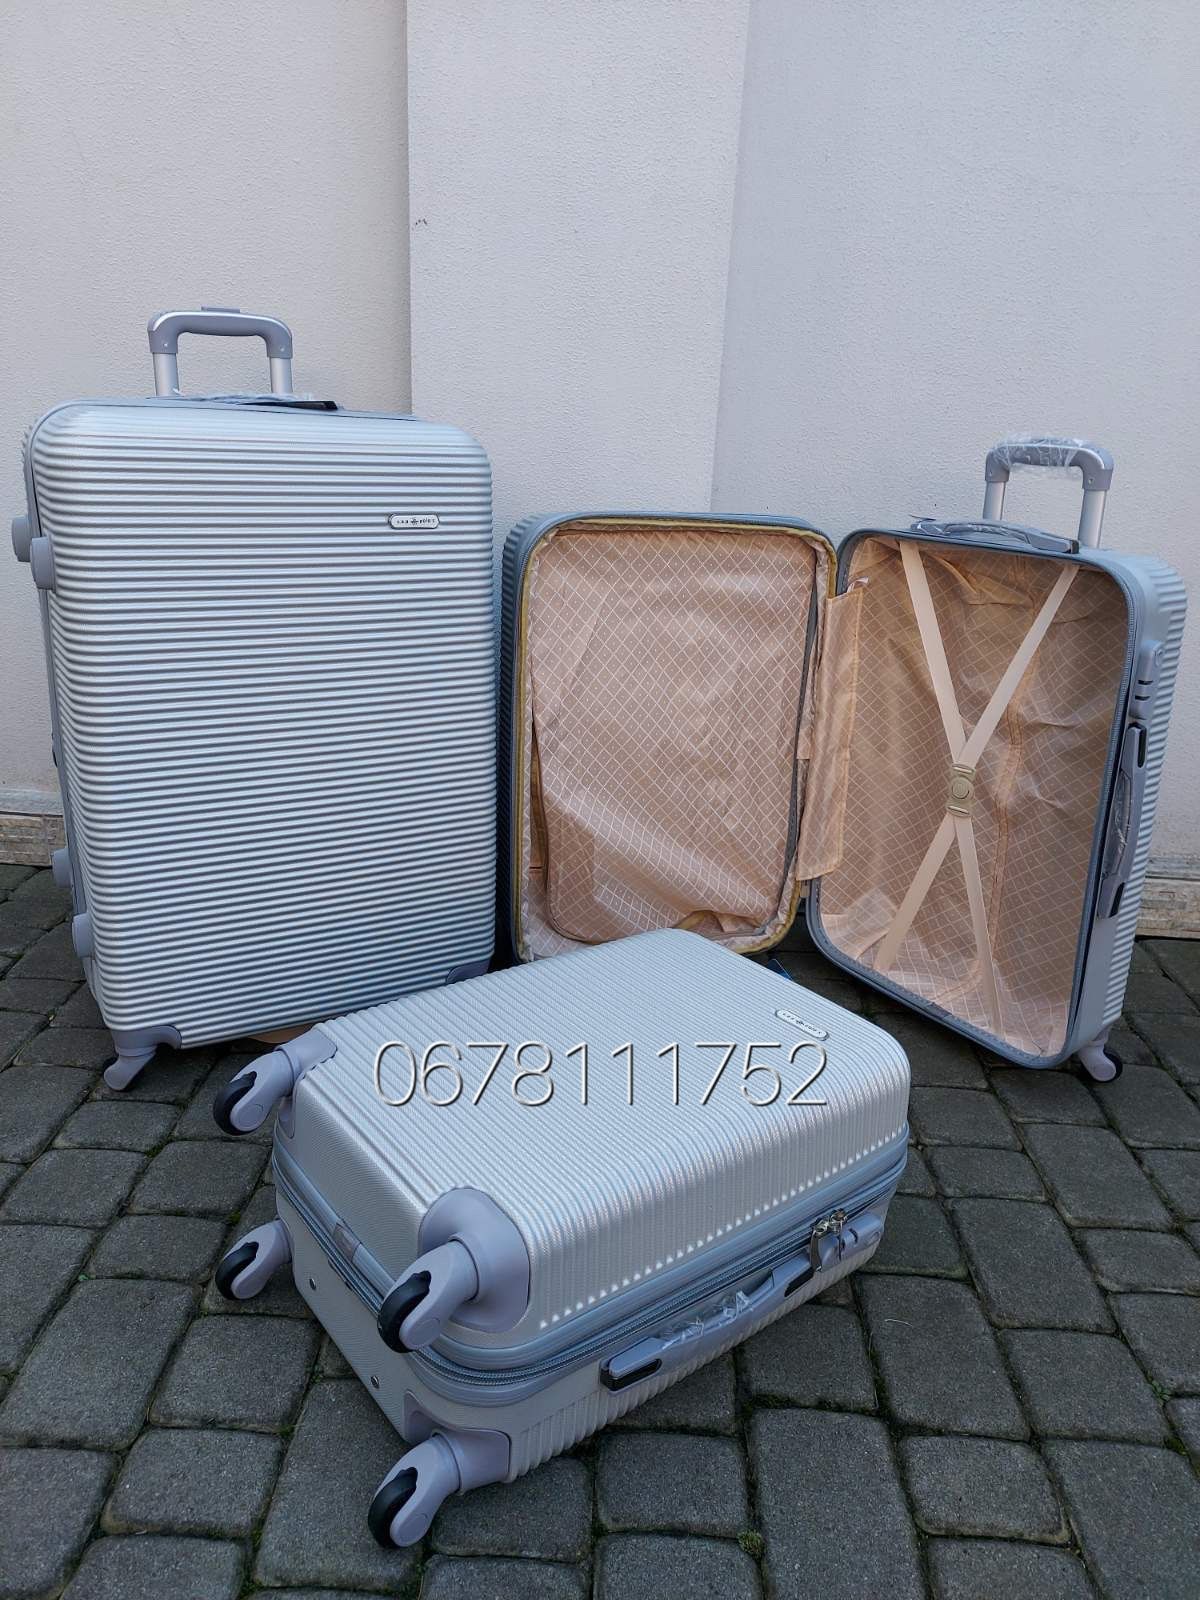 MILANO 004 Polo Египет валізи чемоданы сумки на колесах